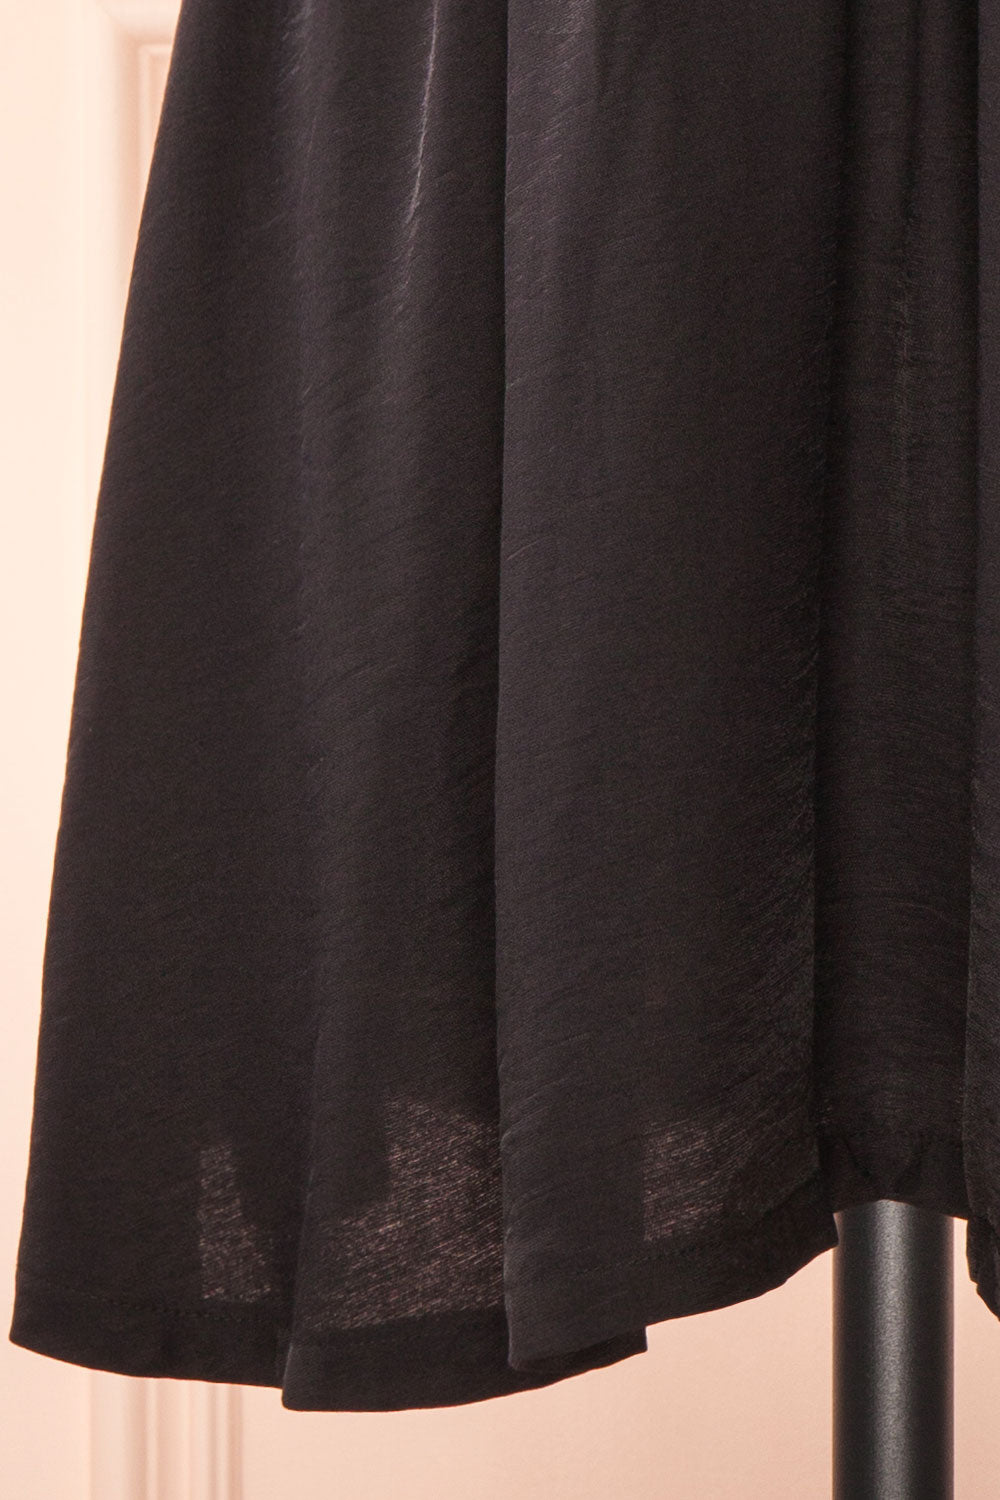 Tillie Short Black Plunging Neckline Dress | Boutique 1861 bottom